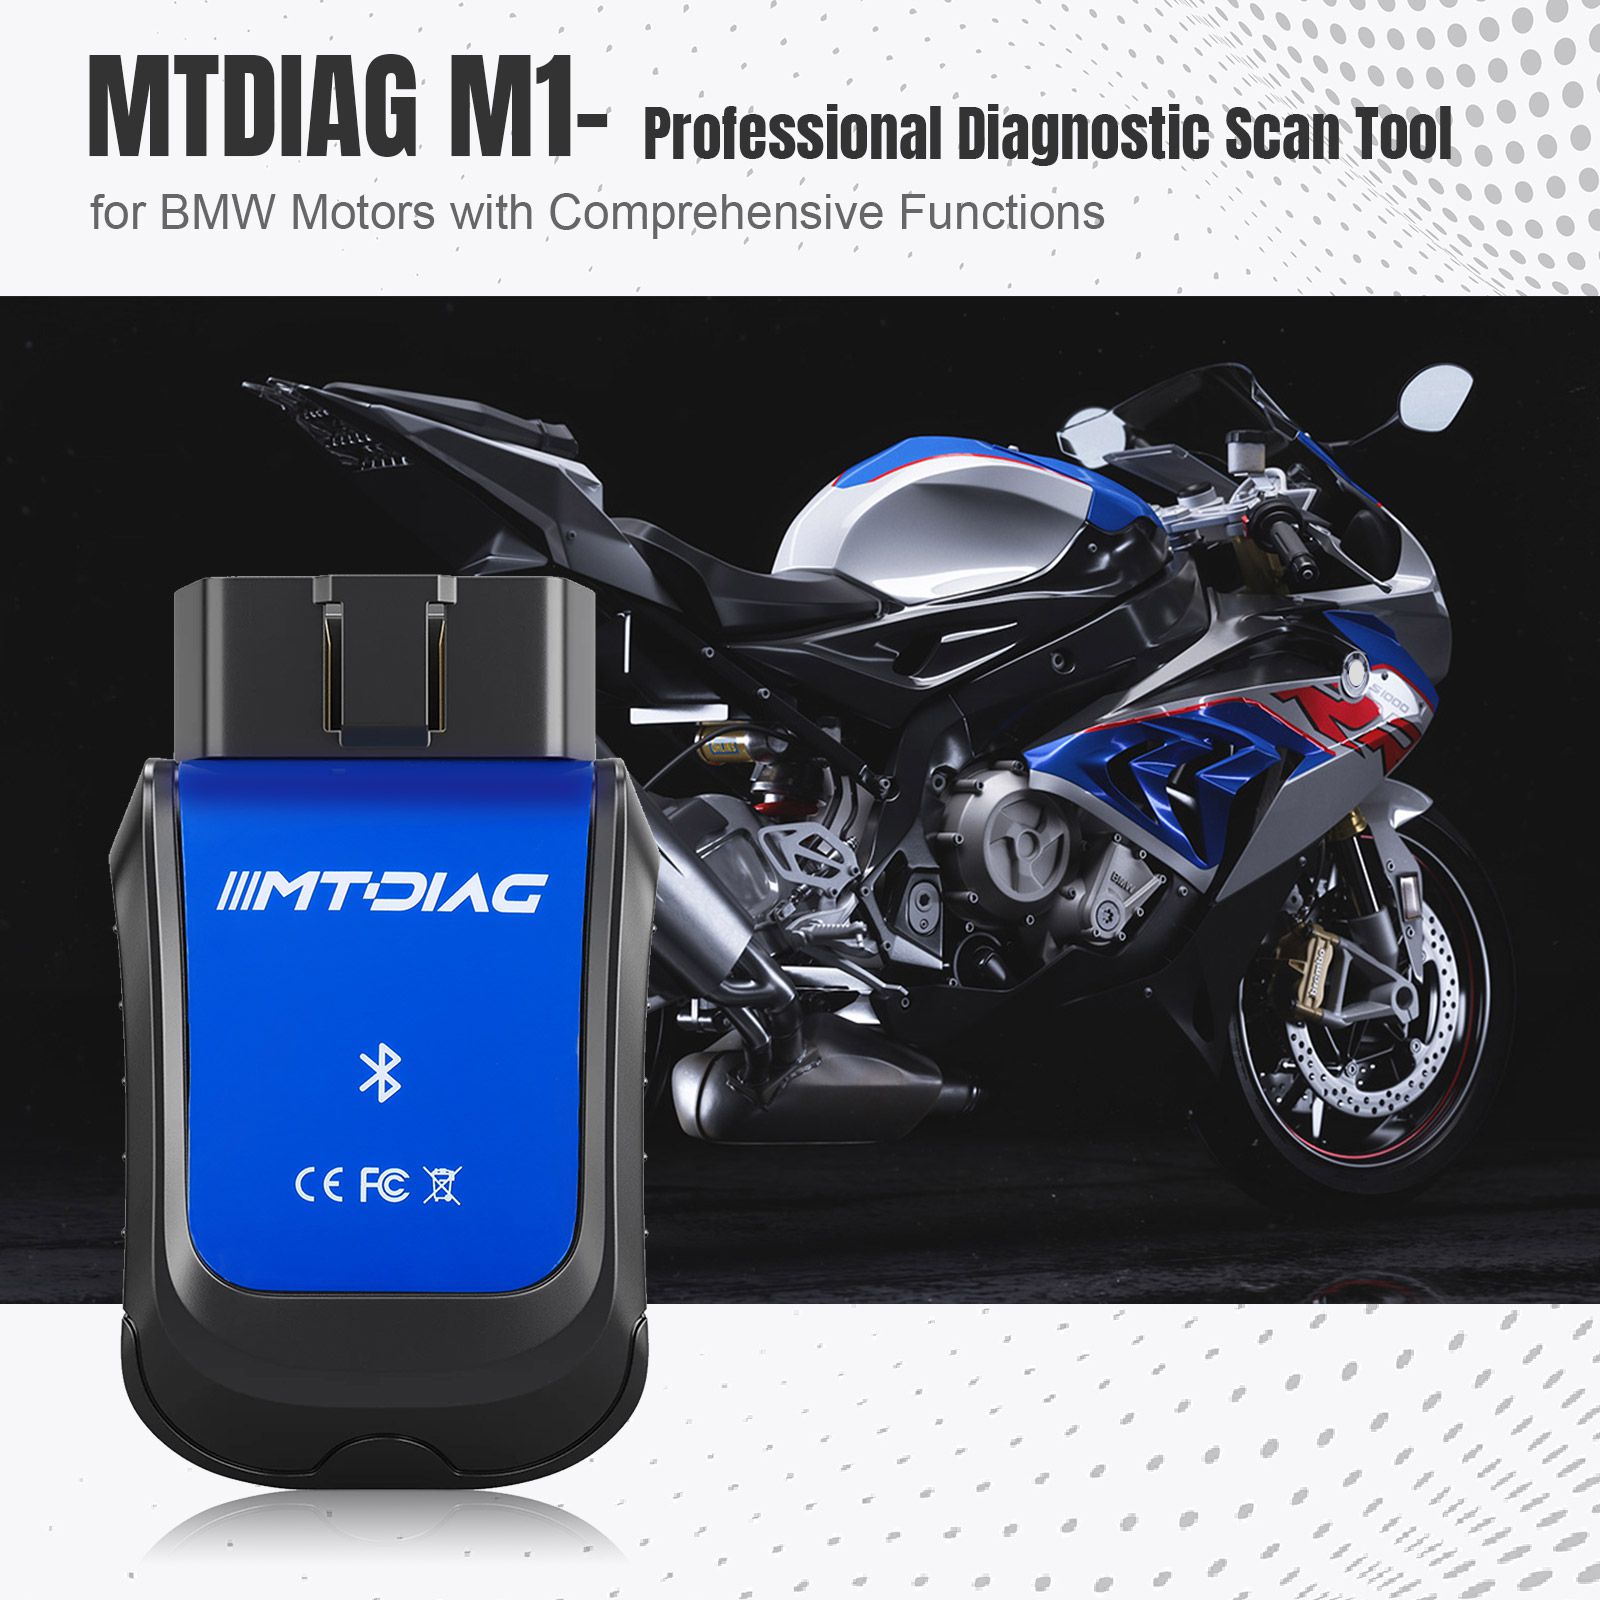 Herramienta de diagnóstico de fallas de diagnóstico profesional mtdiag M1 de motocicleta BMW con función integral herramienta de diagnóstico móvil personalizada